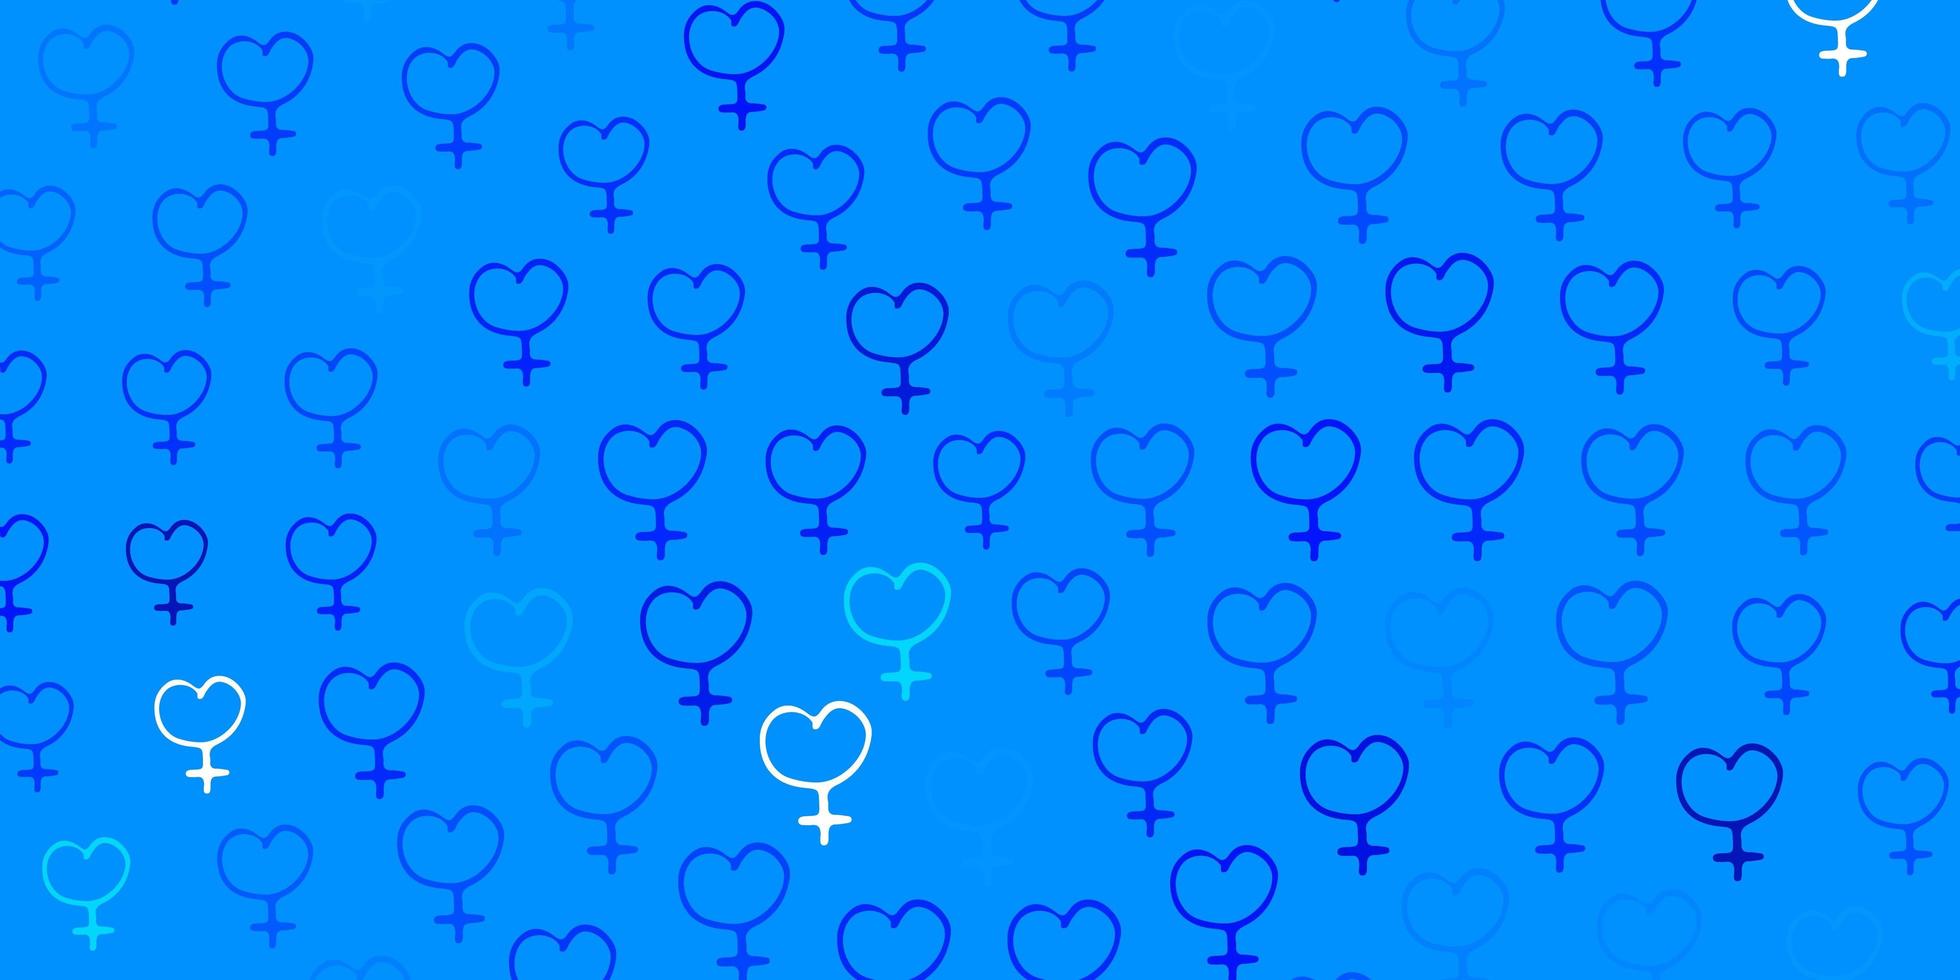 padrão de vetor azul claro com elementos do feminismo.